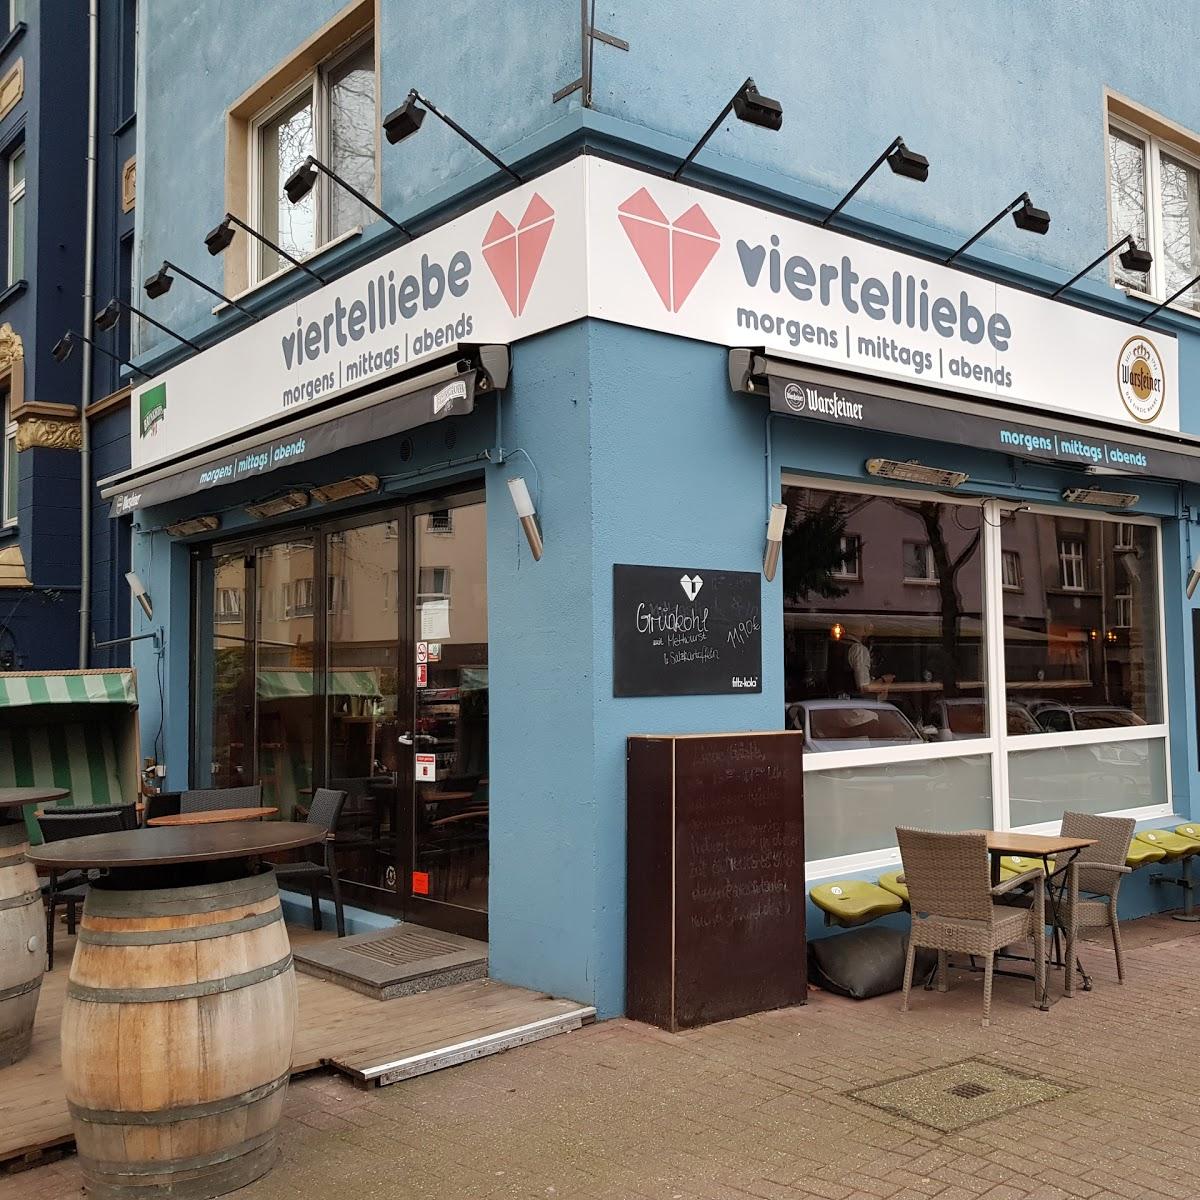 Restaurant "Viertelliebe" in Dortmund